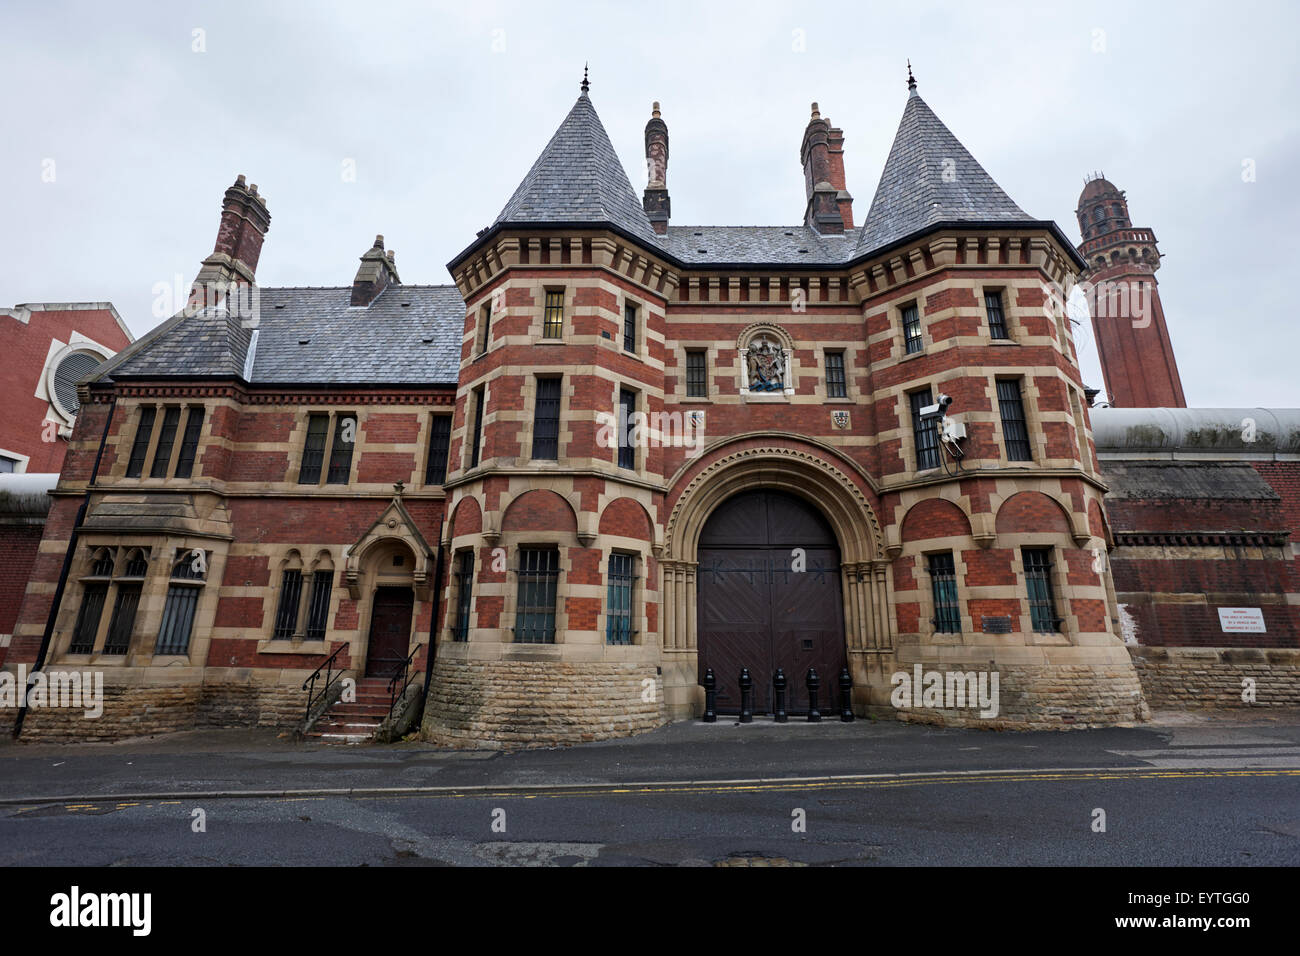 HMP Manchester Gefängnis Strangeways England UK Stockfoto